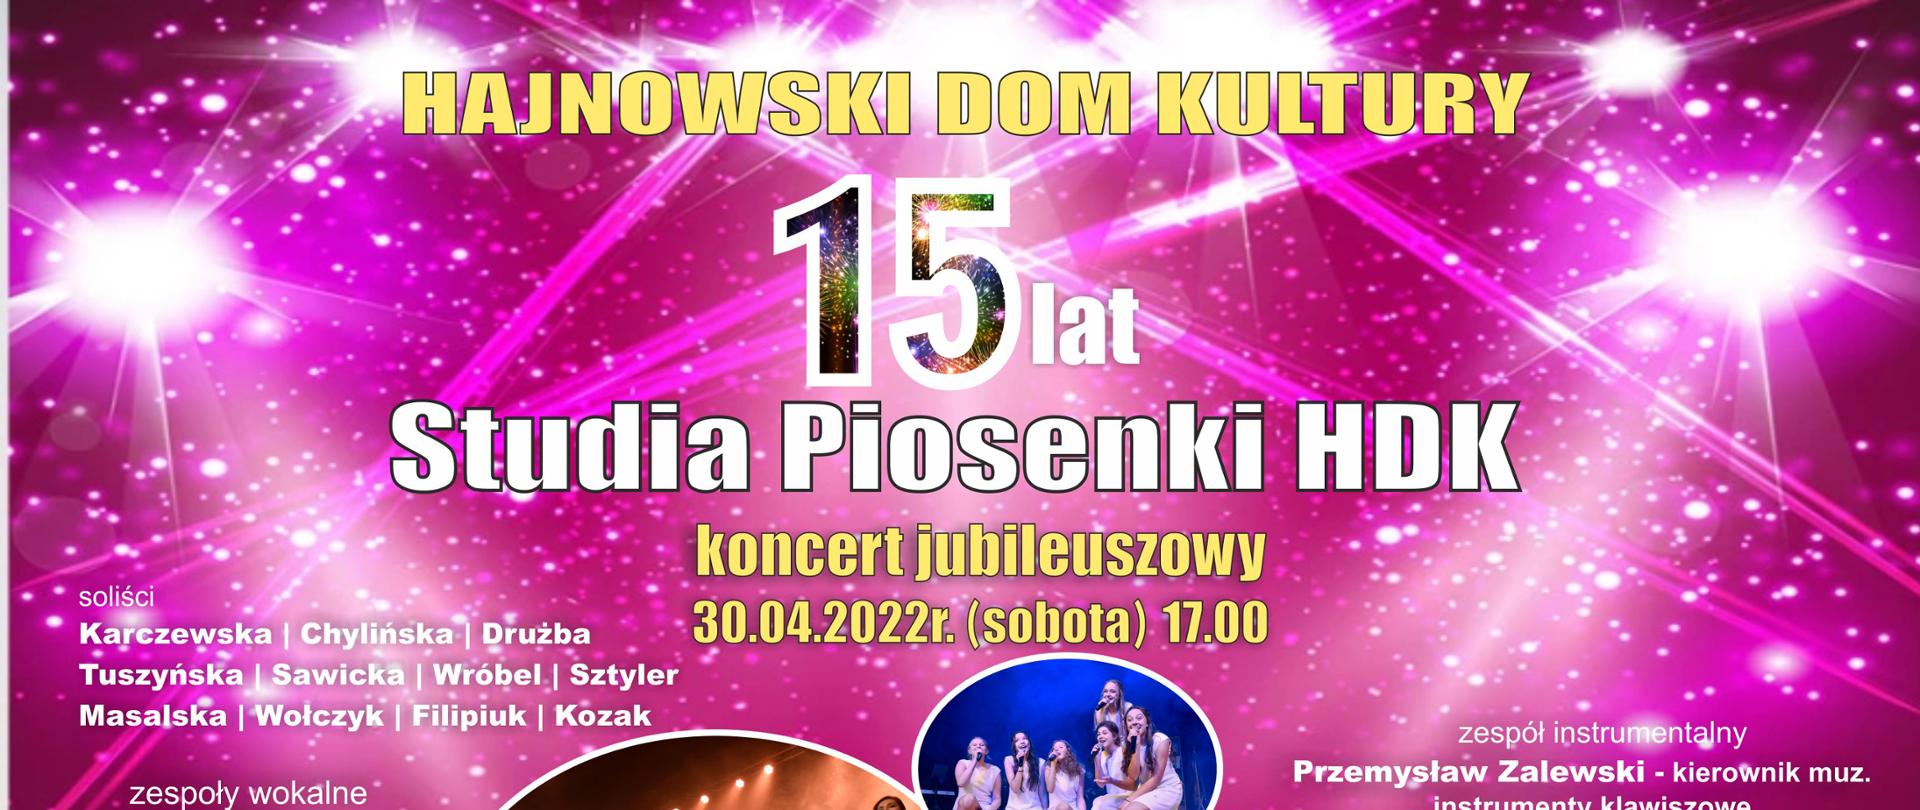 Plakat promujący wydarzenie - na różowym tle napisy informacyjne, zdjęcia solistek HDK, loga patronatów